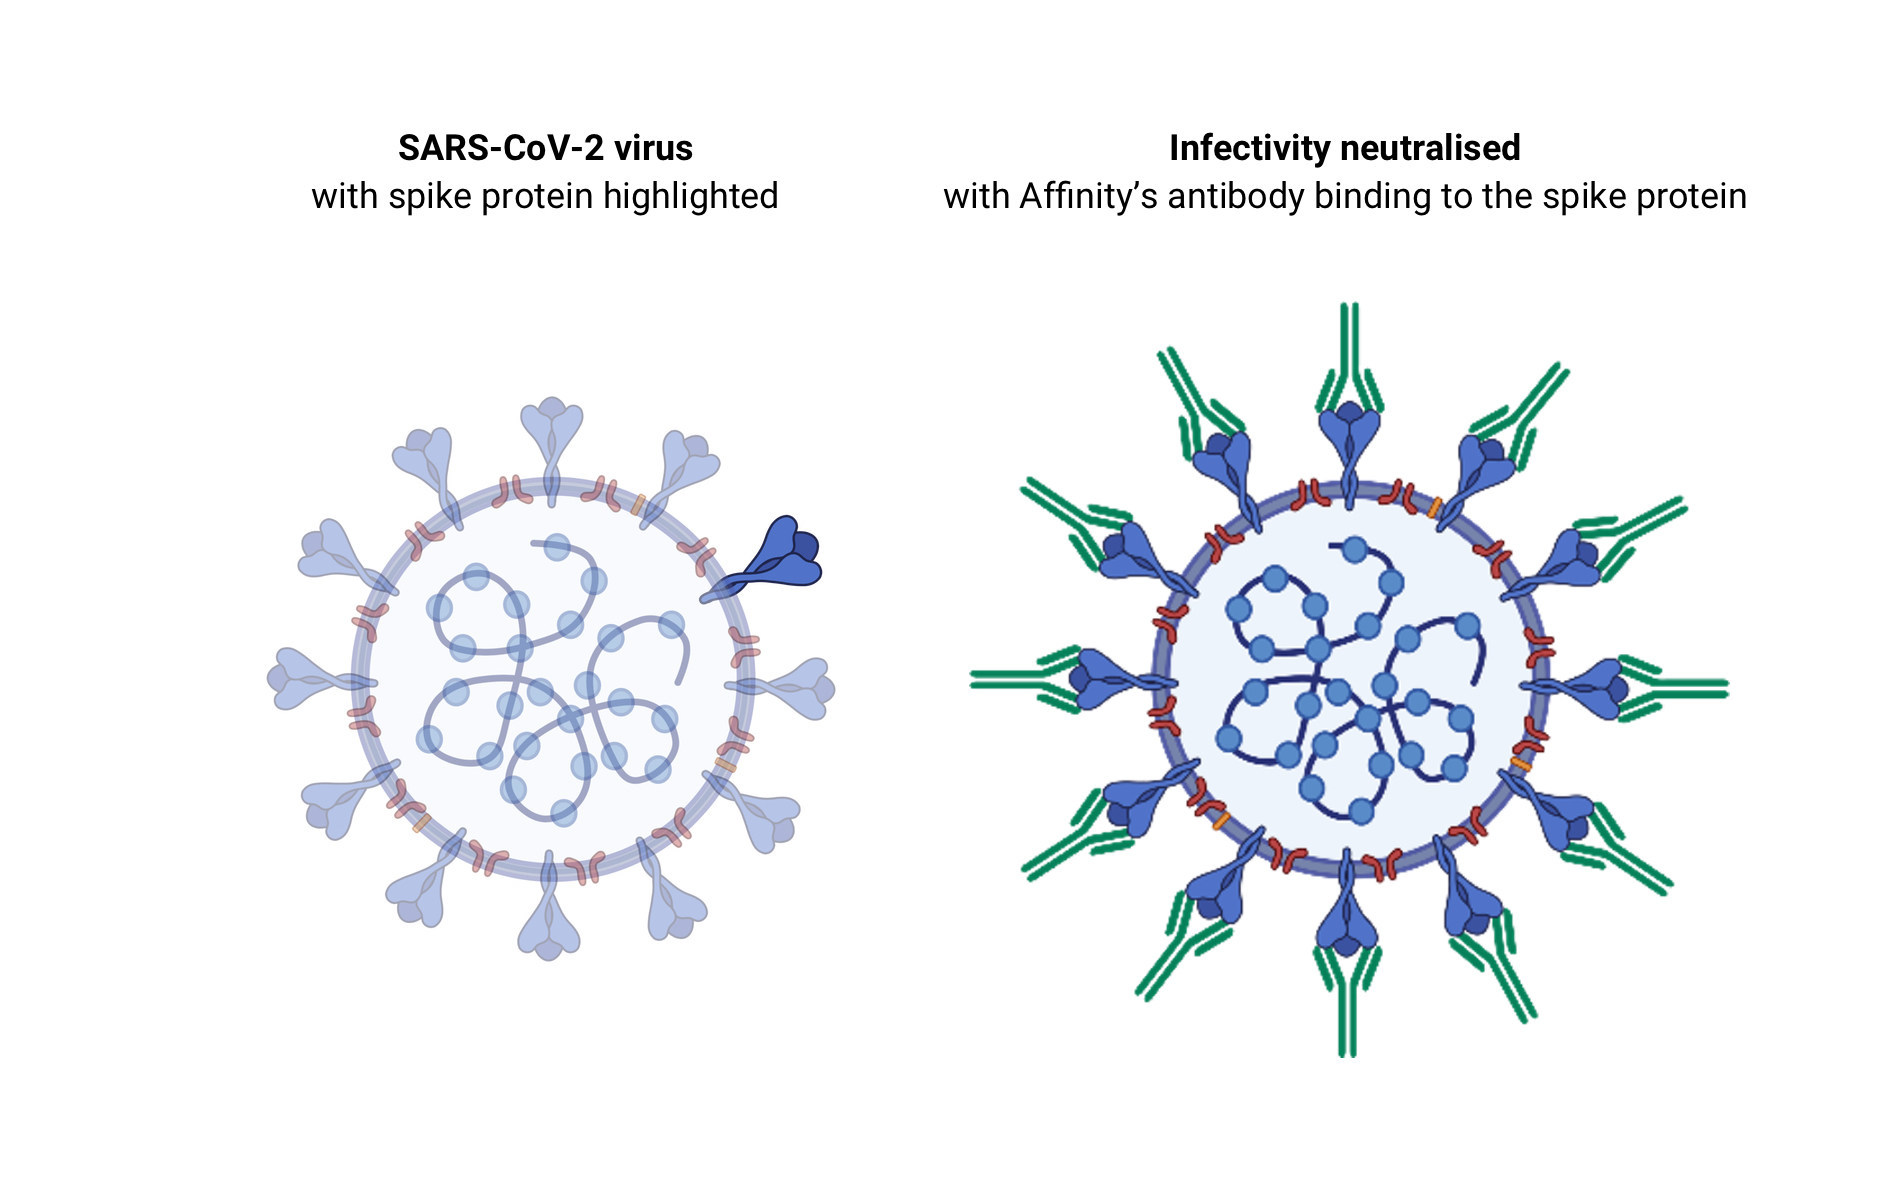 Figura 4. Representación esquemática de la neutralización del virus SARS-CoV-2 con anticuerpos específicos. En azul, se resalta la proteína espiga del virus. En verde, los anticuerpos neutralizantes que evitarán la interacción con el receptor ACE2. Modificada de: https://www.prnewswire.com/news-releases/affinity-descubre-anticuerpos-potentes-para-sars-cov-2-801943716.html